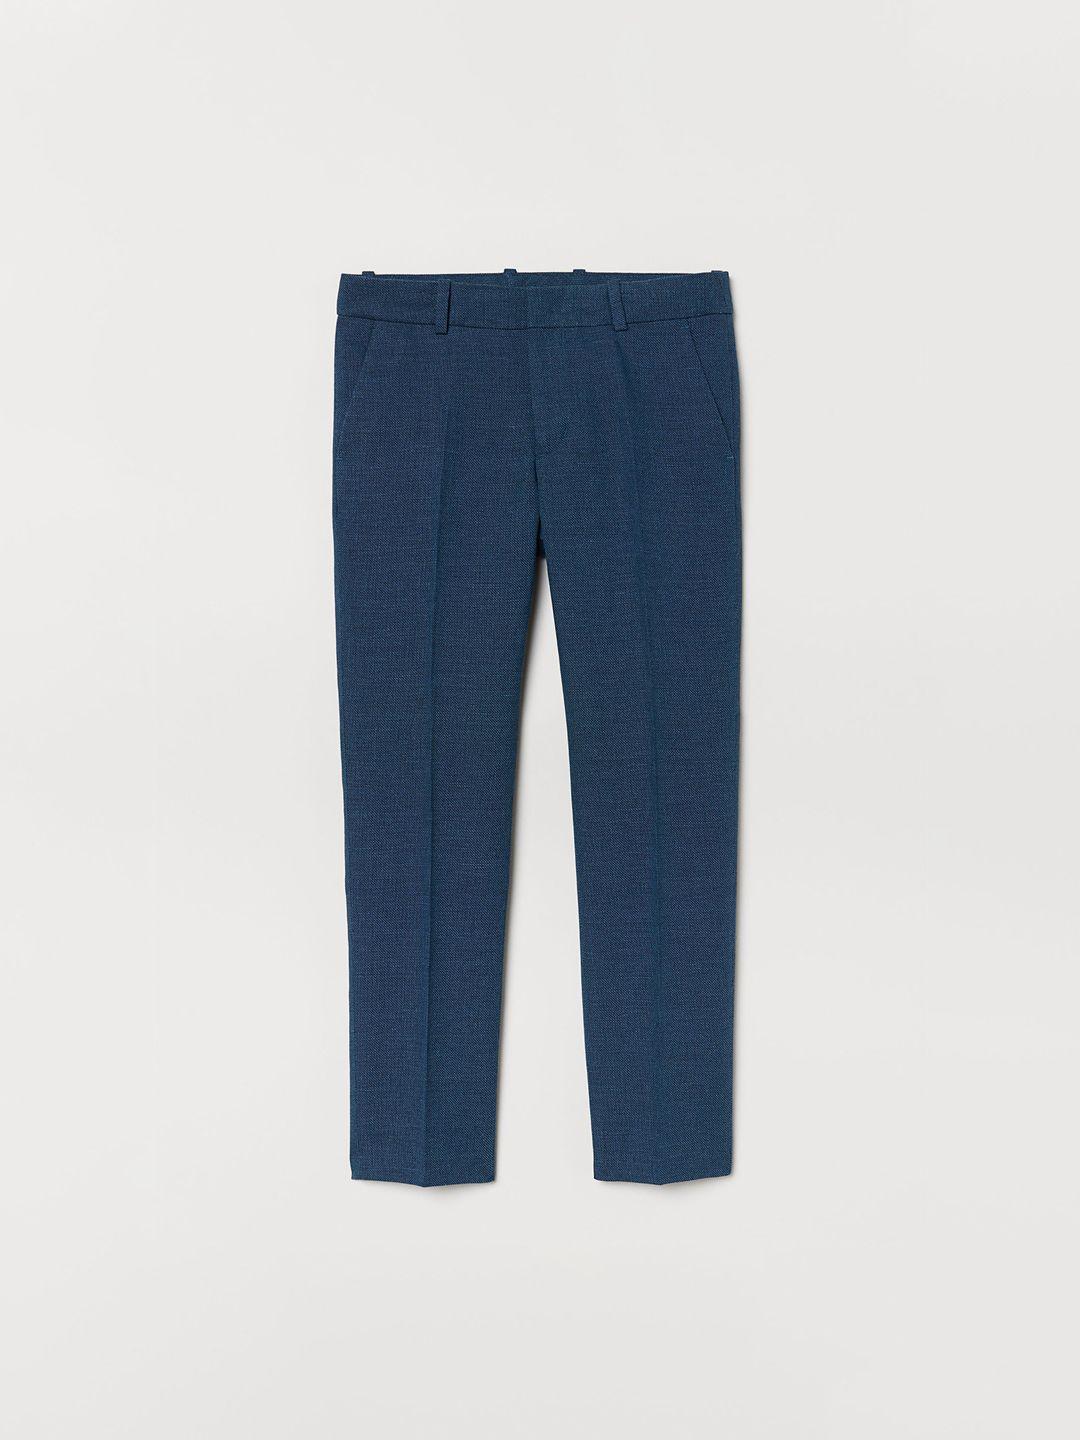 h&m-boys-blue-textured-suit-trousers